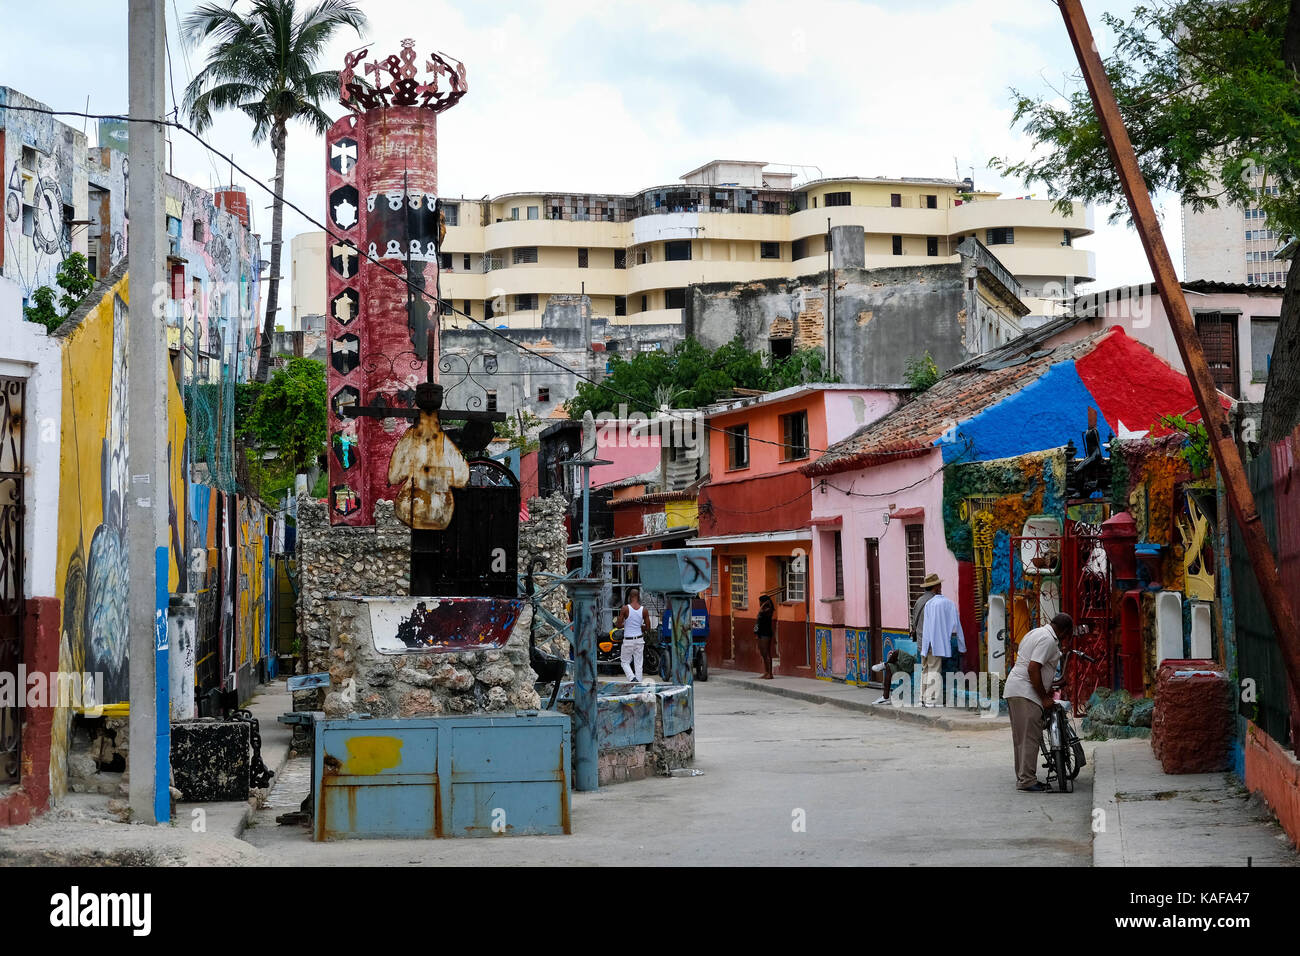 Il Callejon de hamel nel centro habana all Avana, Cuba. il colorato afro-cubano progetto arte il cervello era figlio di salvador gonzalez escalona. Foto Stock